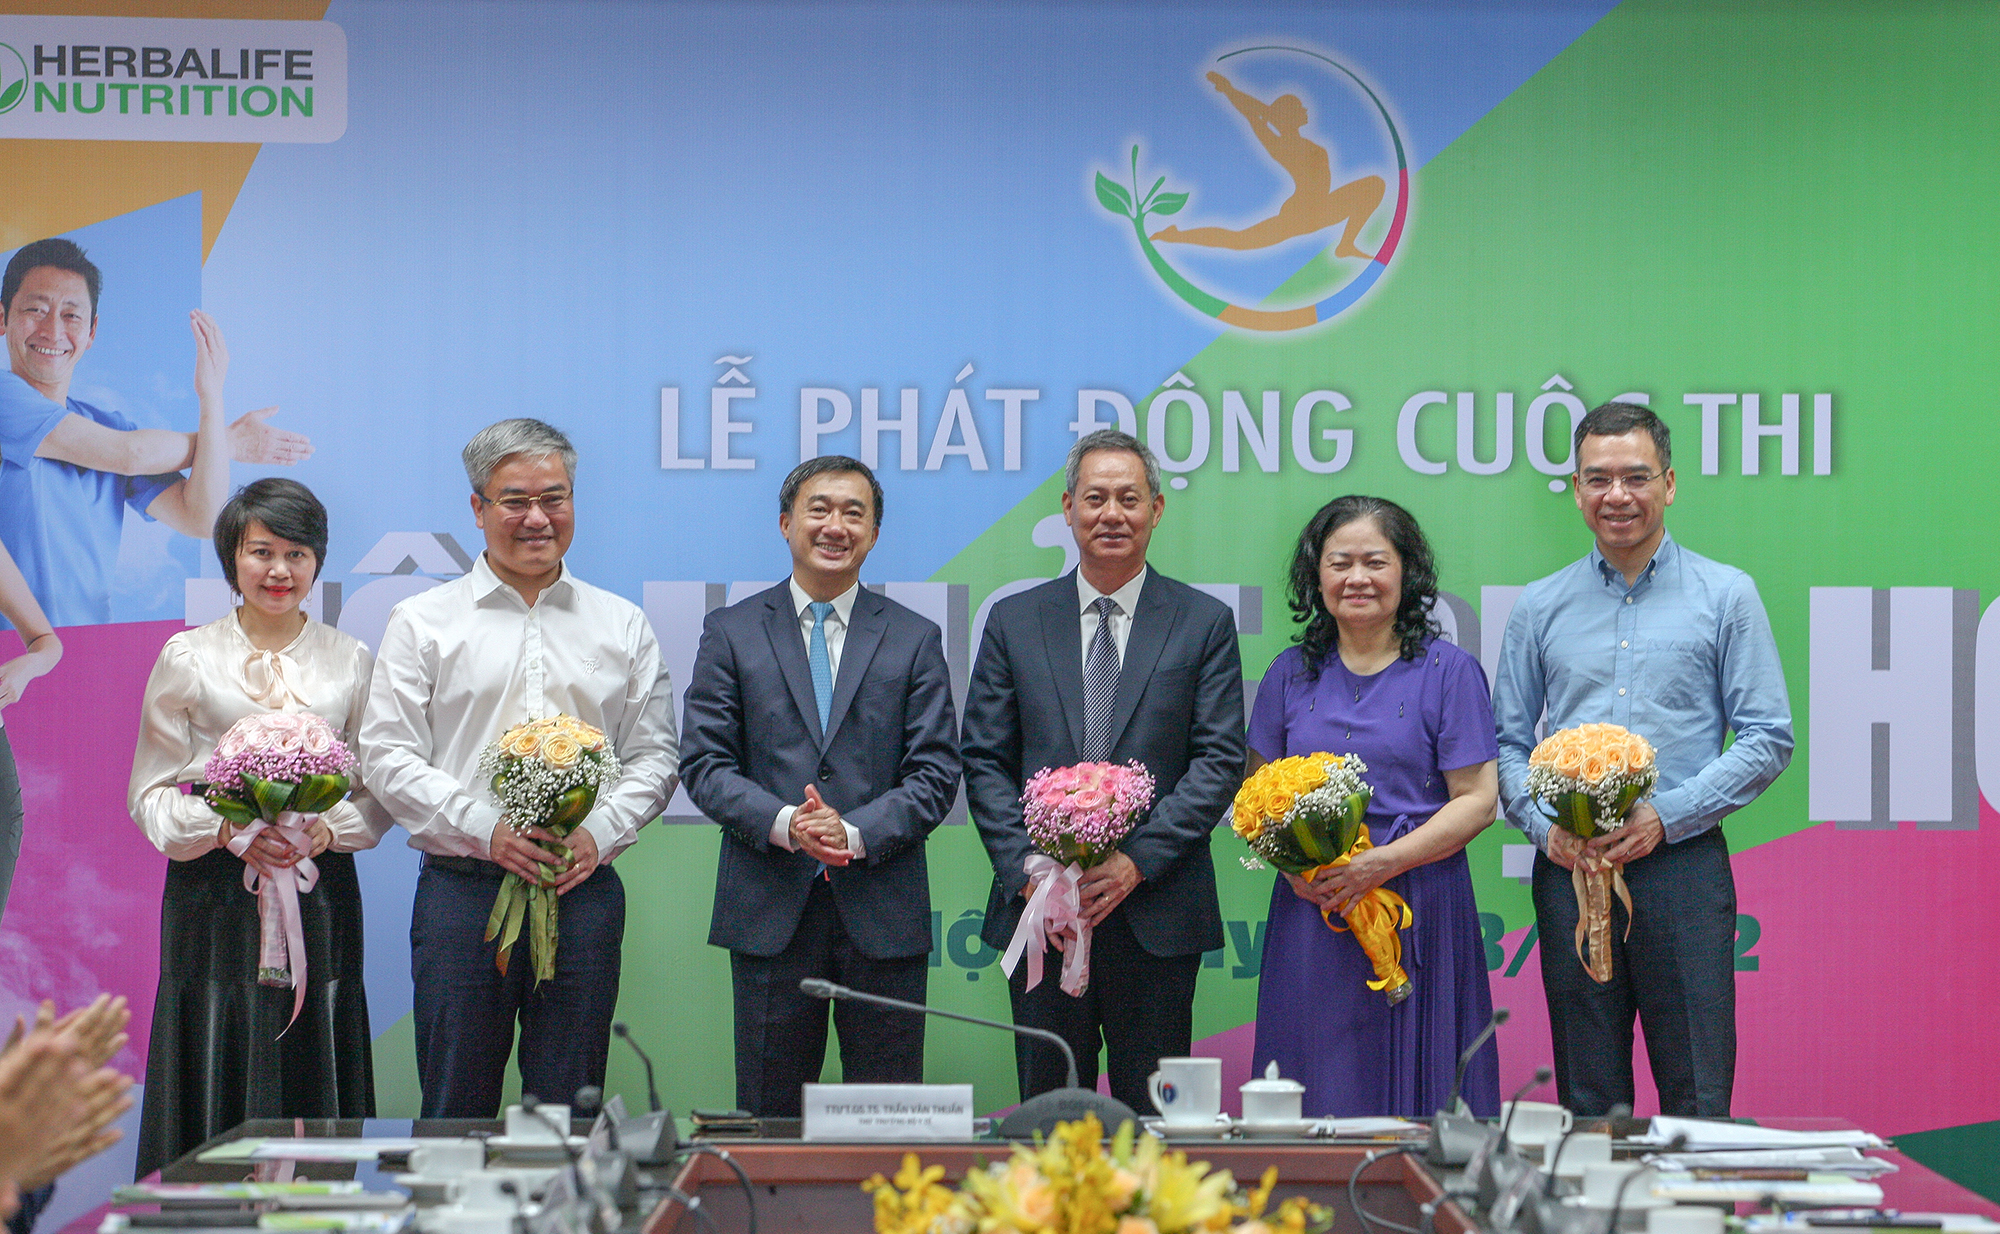  Thứ trưởng Trần Văn Thuấn tặng hoa đại diện các thành viên của Hội đồng giám khảo cuộc thi TÔI KHOẺ ĐẸP HƠN. Ảnh: Trần Minh - Chí Cường